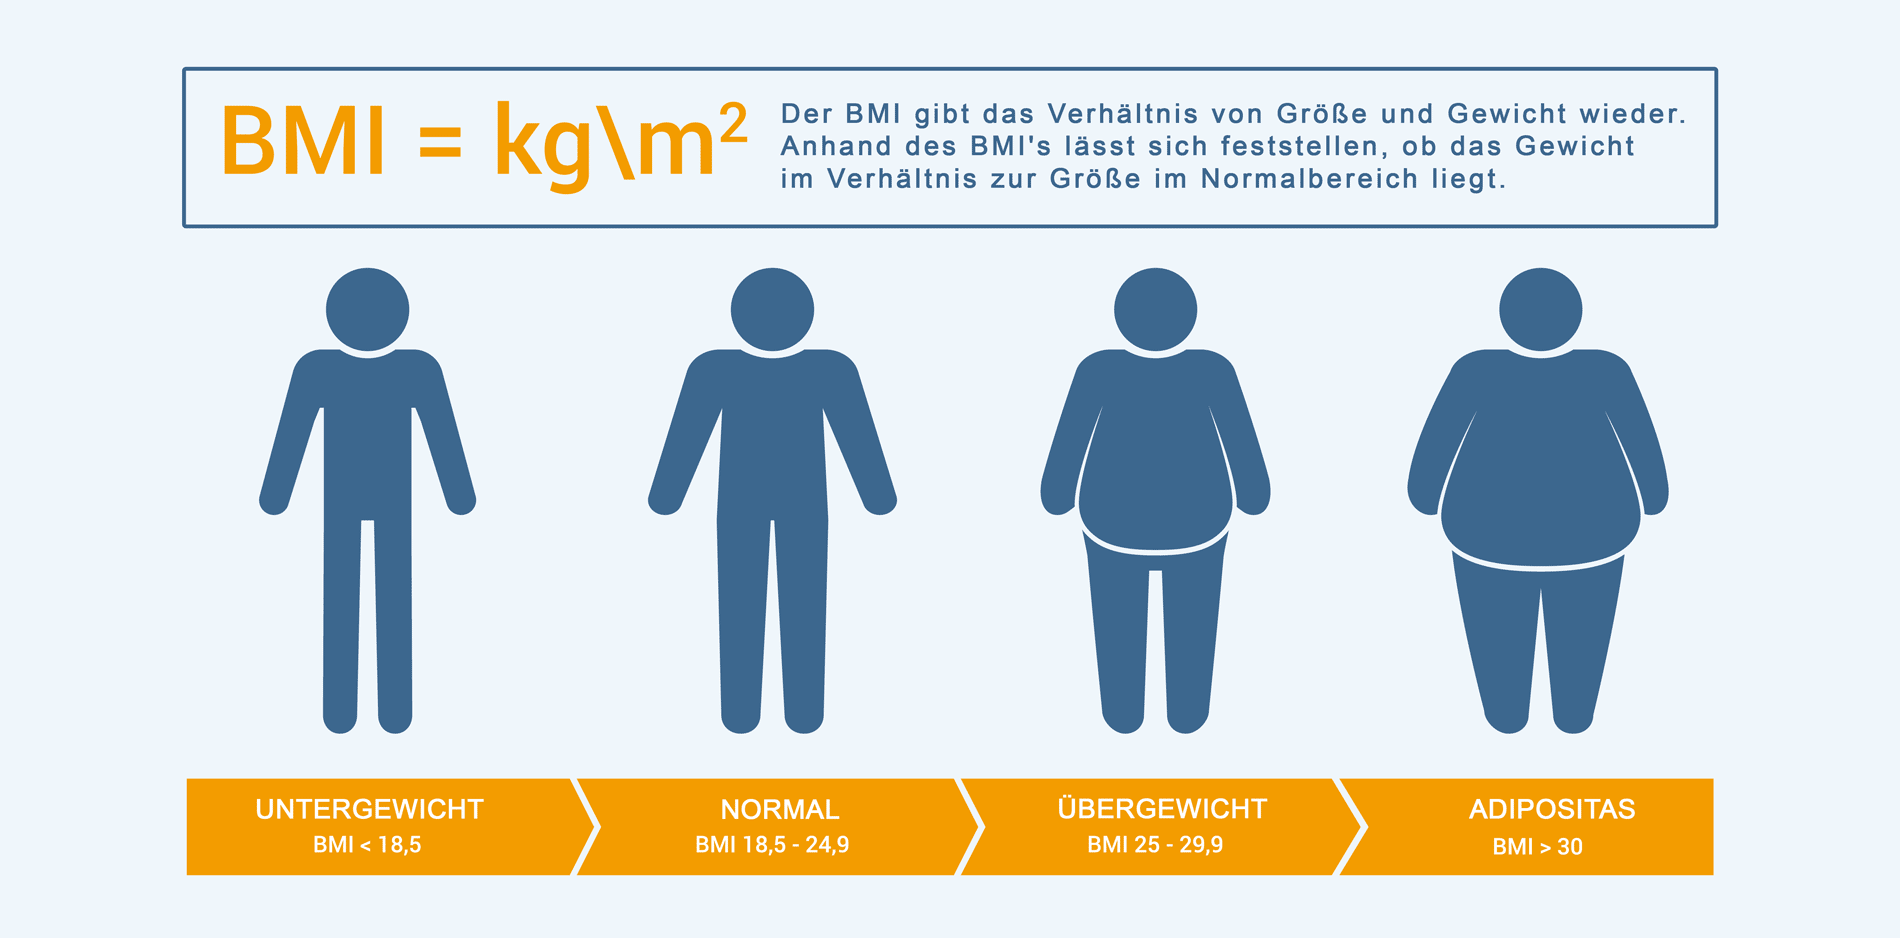 BMI - der Body Mass Index